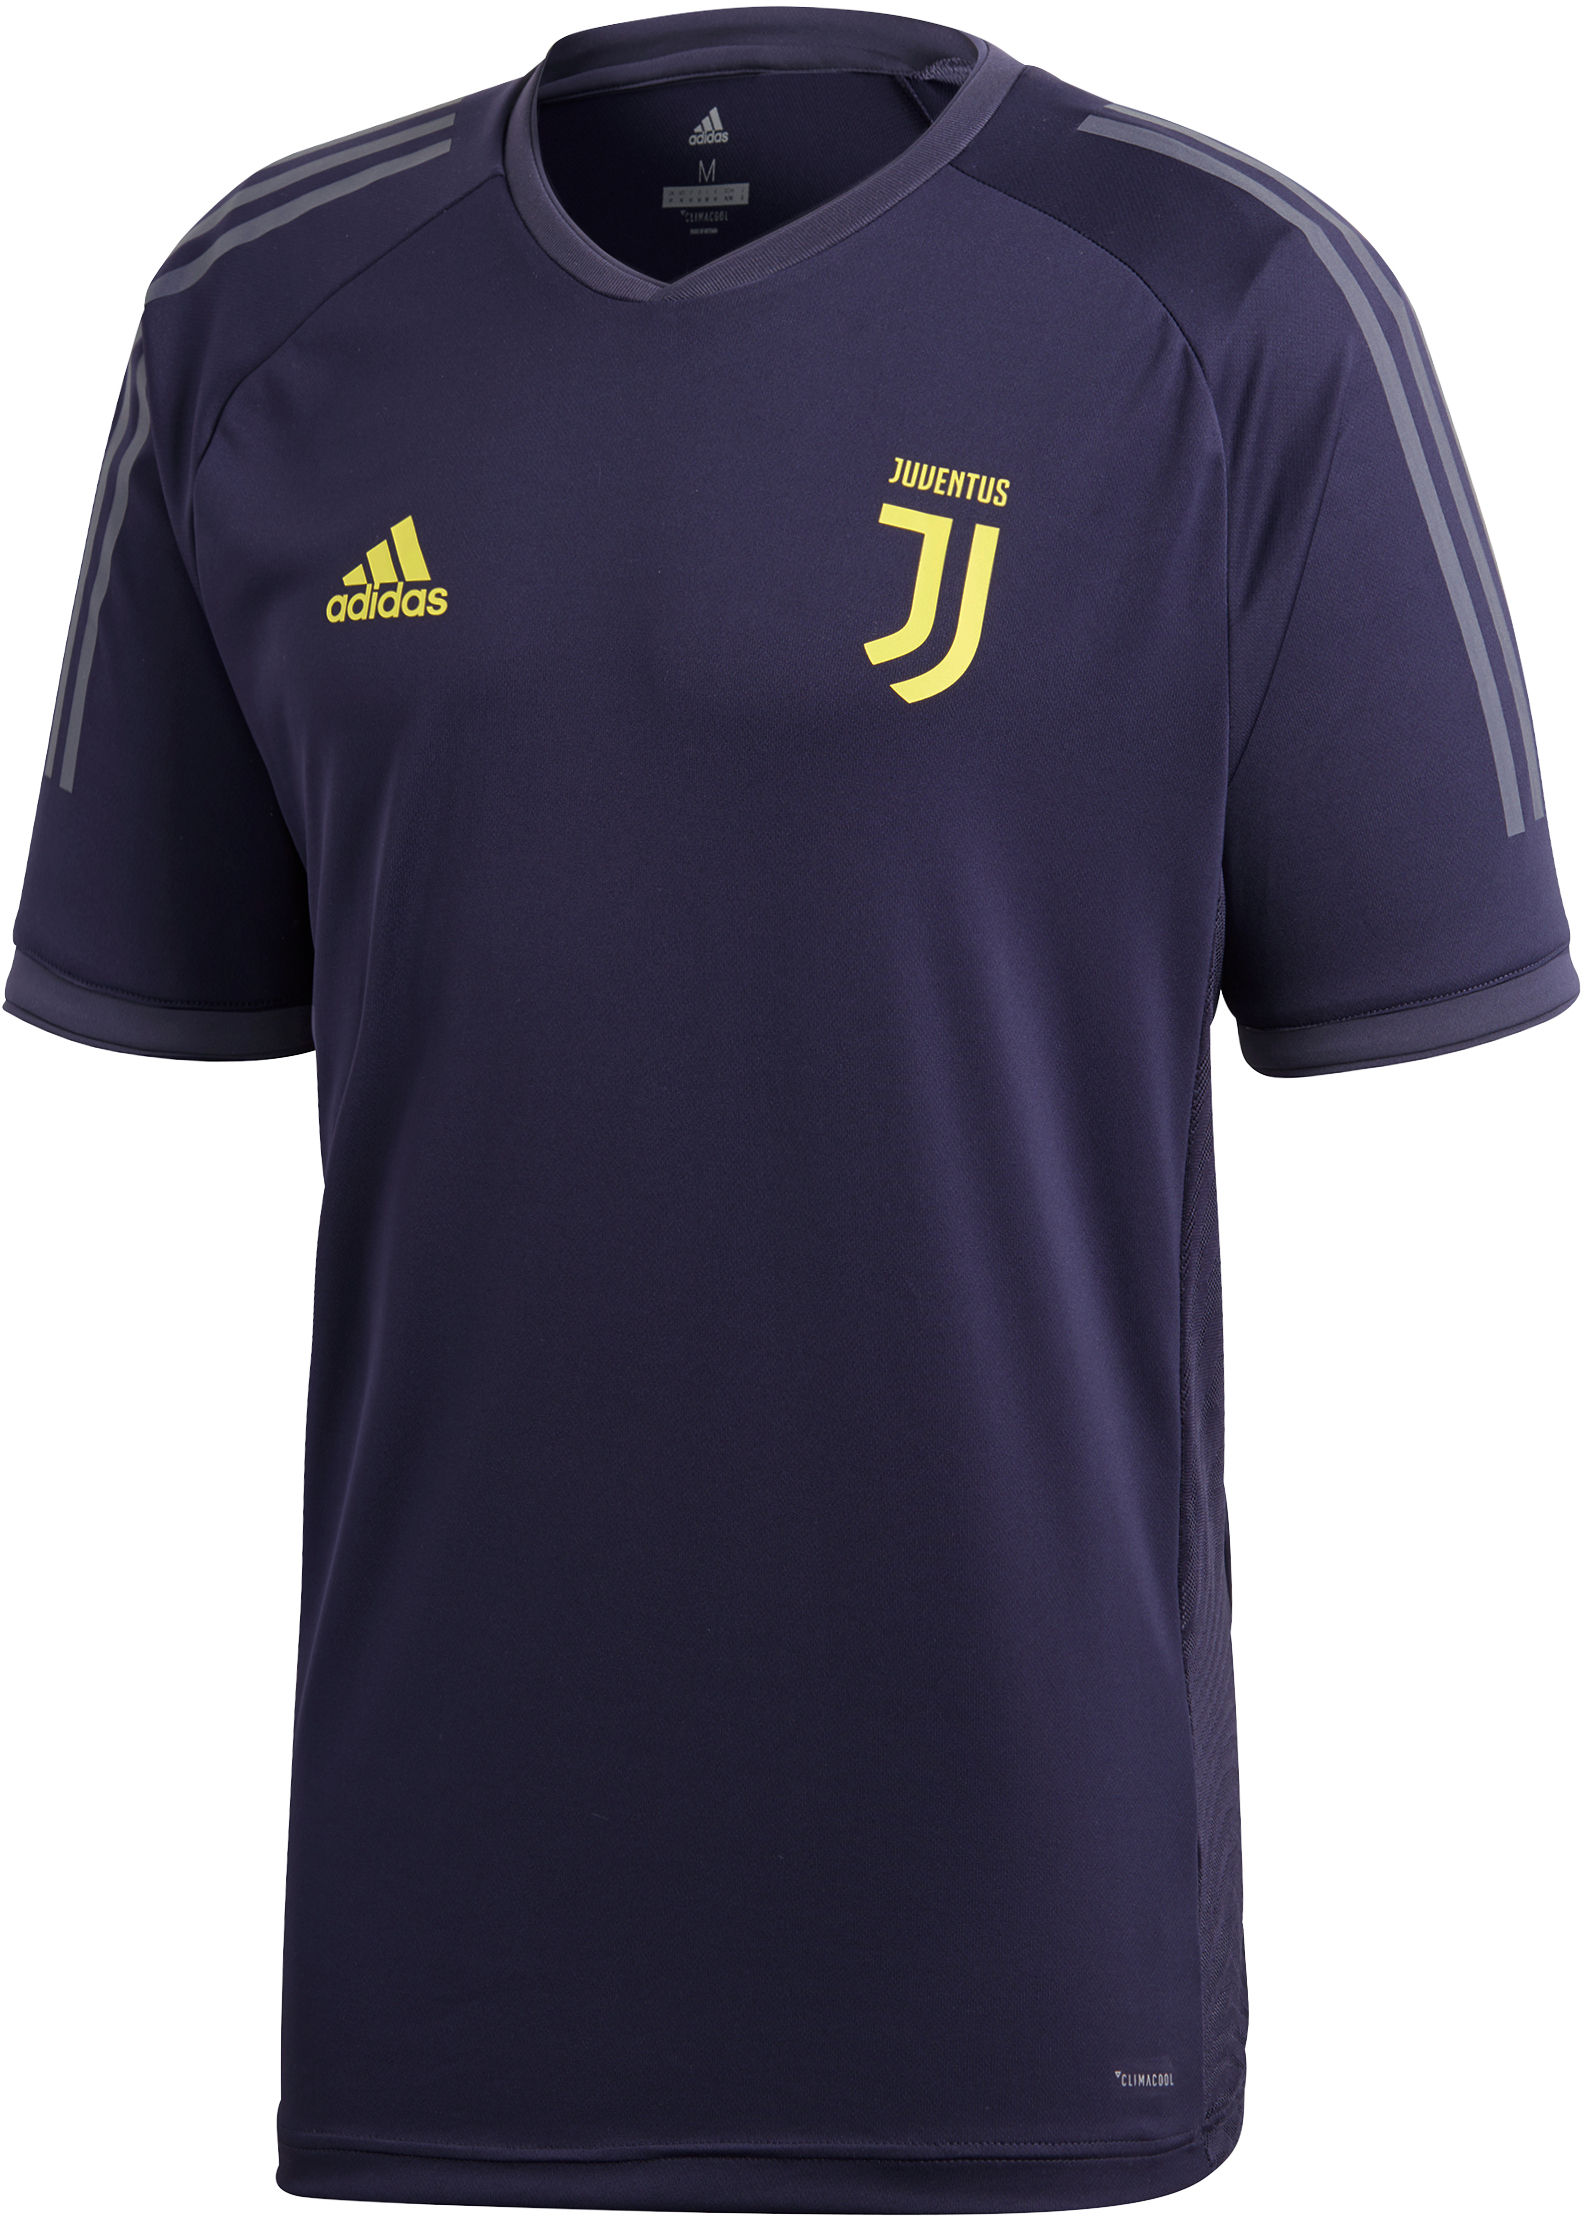 Trikot adidas Juventus Ultimate Training Jersey